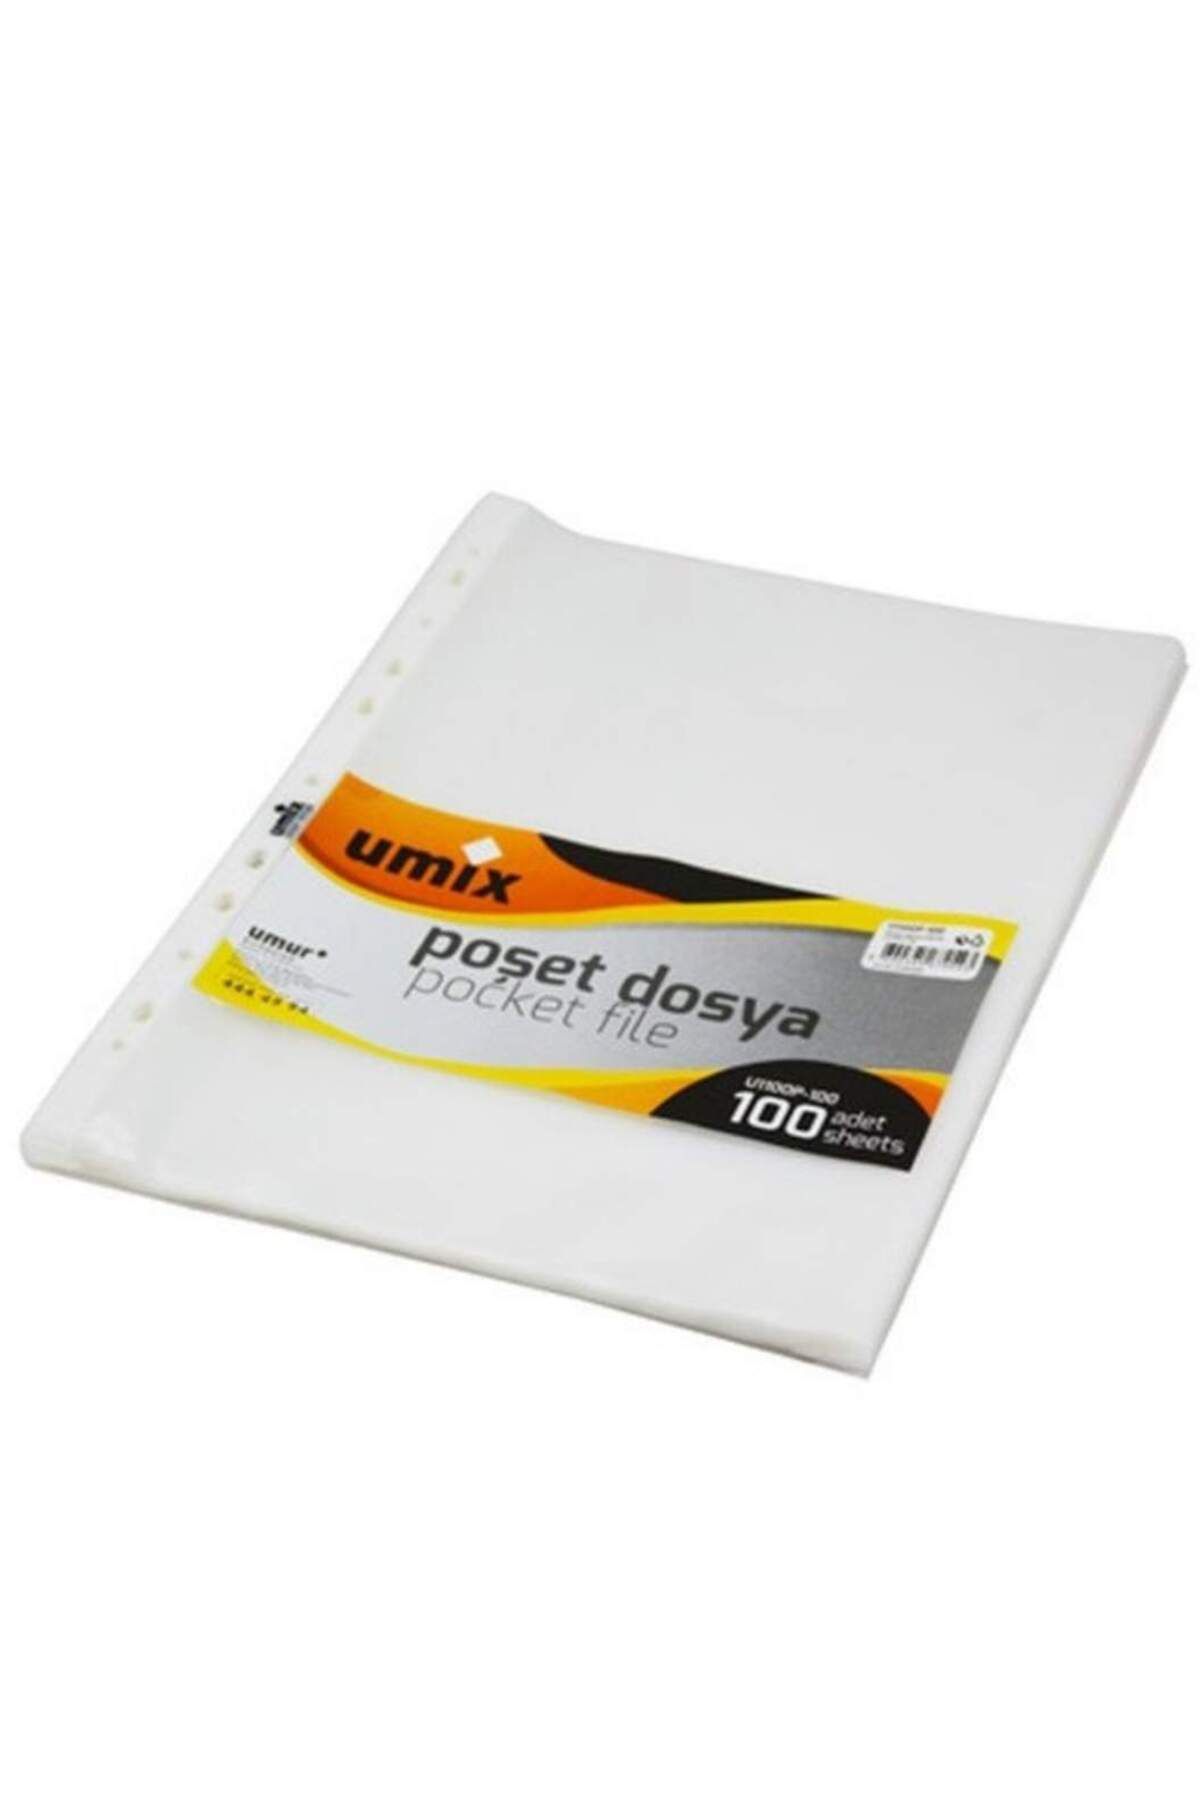 Genel Markalar Poşet Dosya Şeffaf 100'lü Paket N:u1100p-100